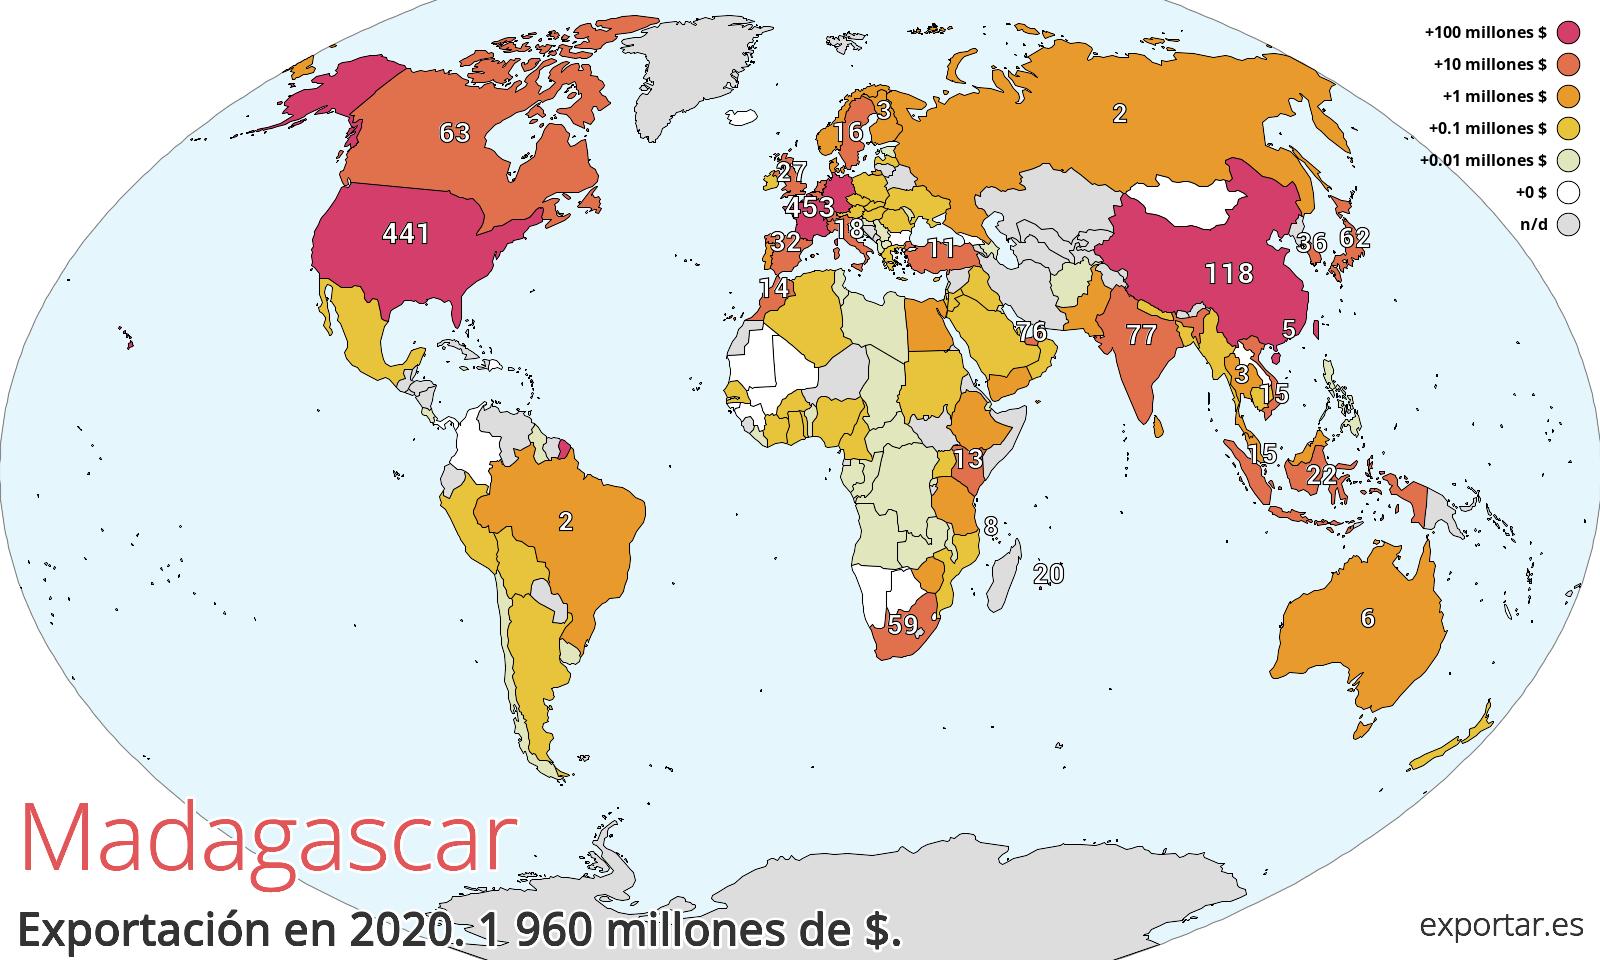 Mapa de exportación de Madagascar en 2020.